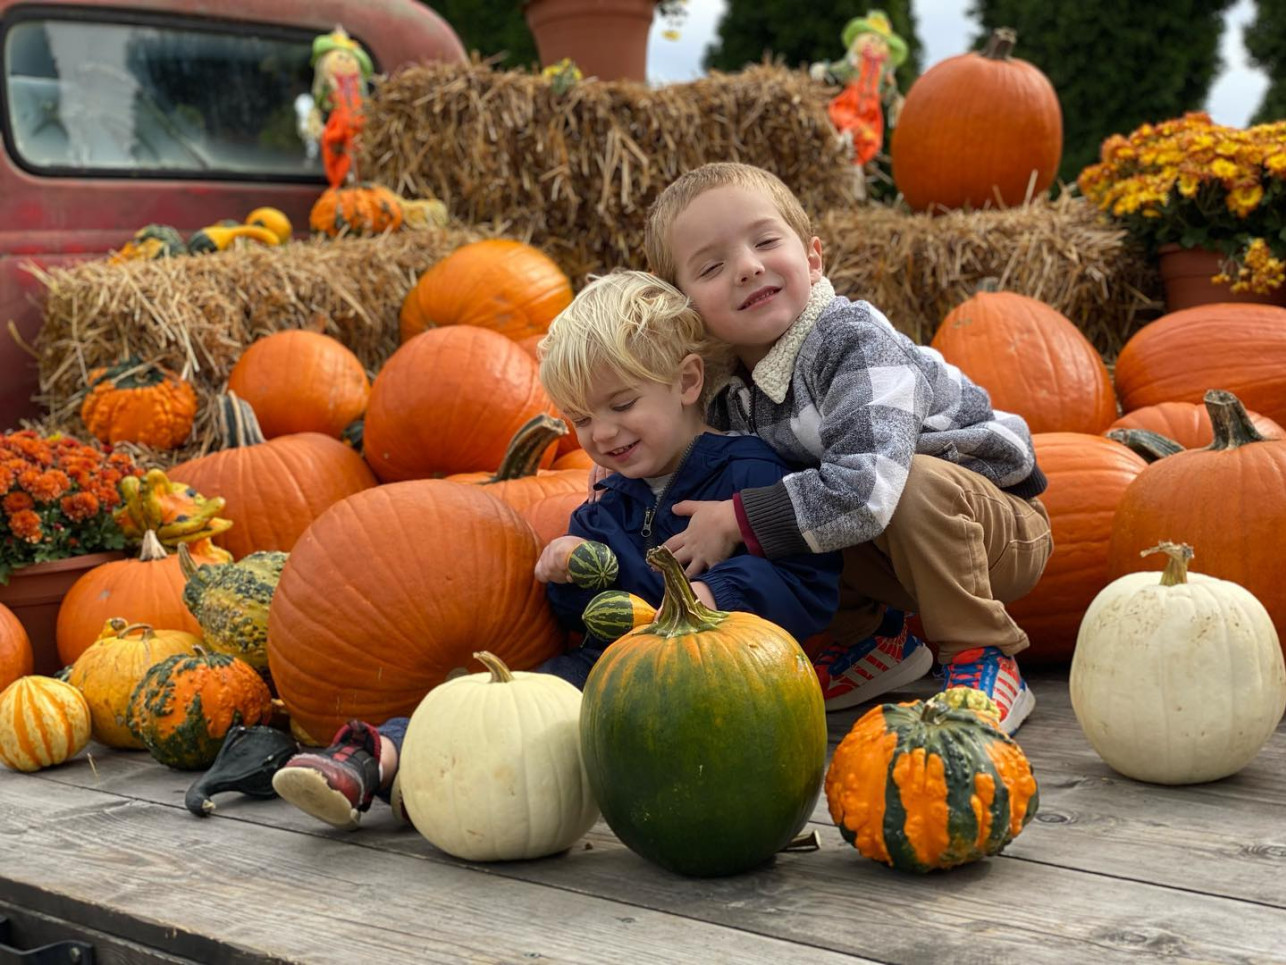 Kids and Pumpkins cassieradackshirk